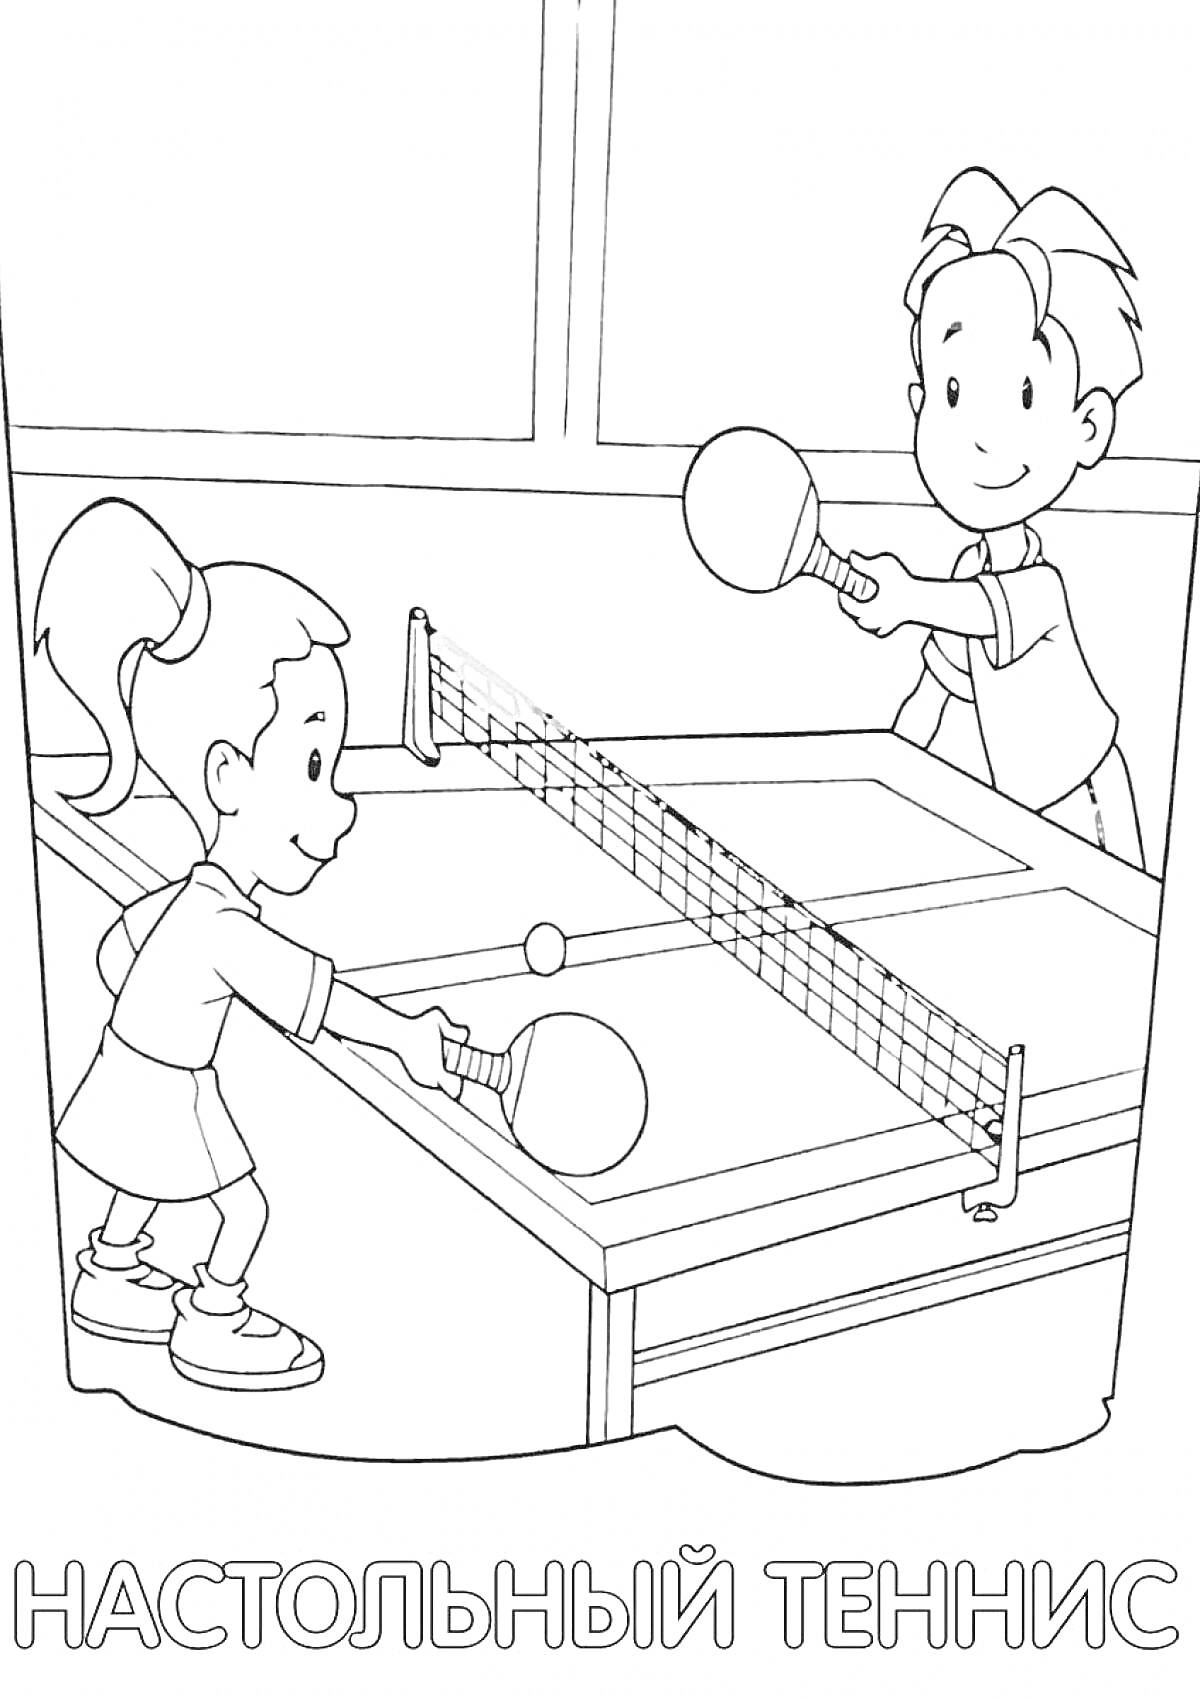 Раскраска Двое детей играют в настольный теннис, девочка и мальчик с ракетками, стол для настольного тенниса, сетка, мячик. Подпись 